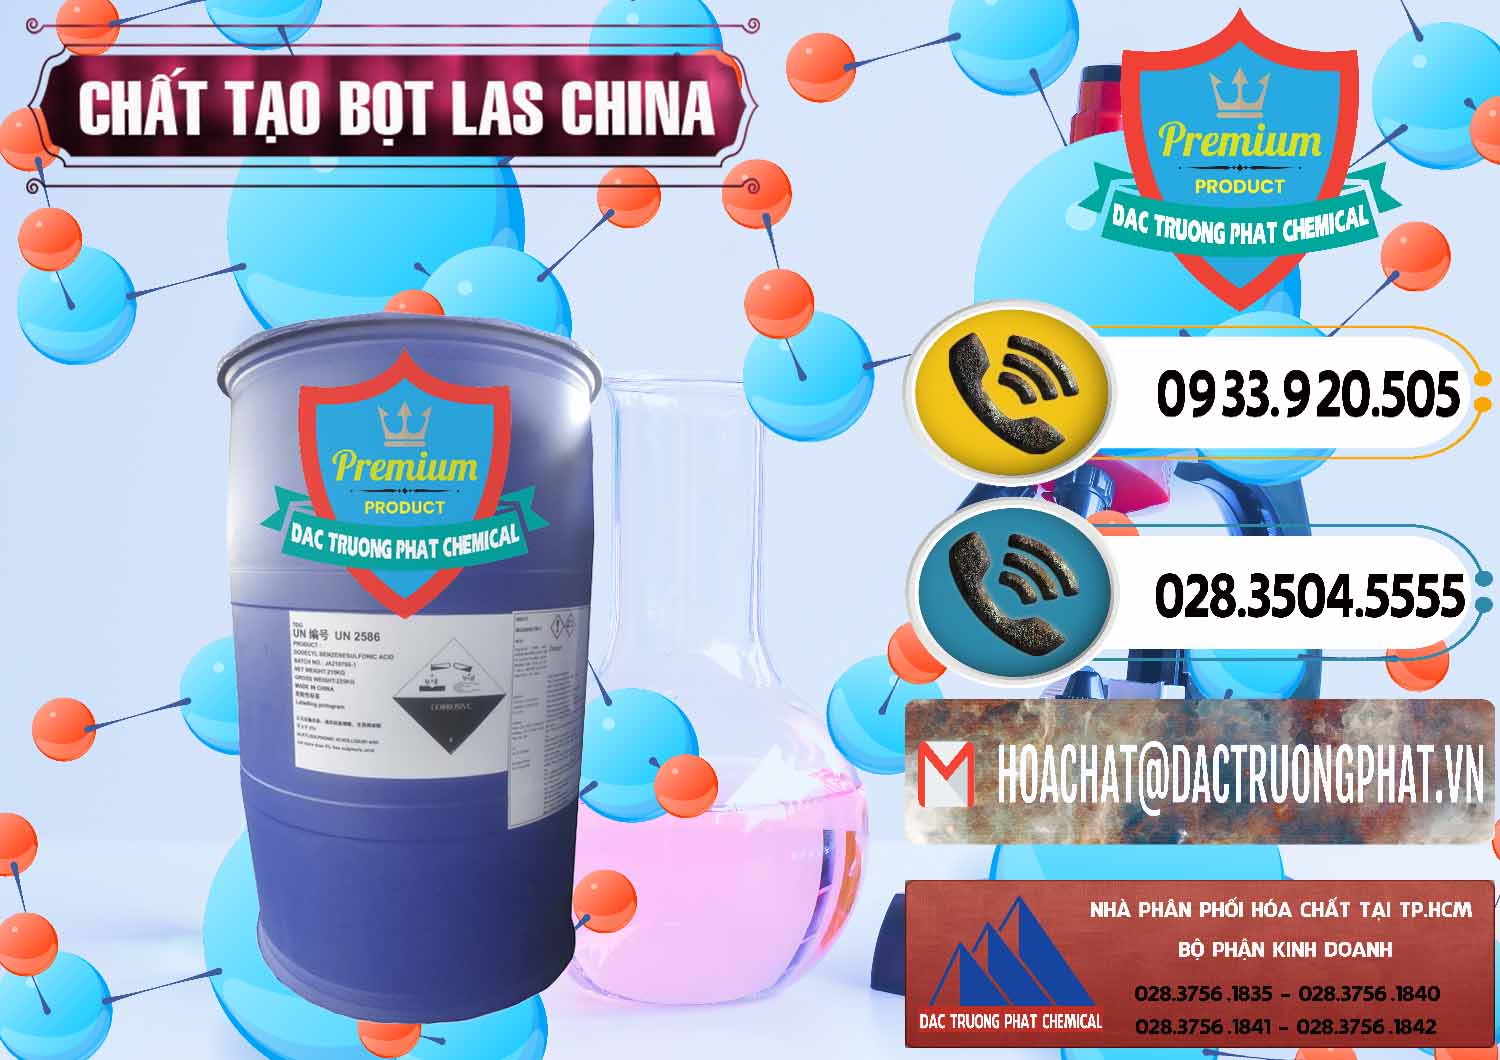 Đơn vị bán _ cung cấp Chất tạo bọt Las Trung Quốc China - 0451 - Nhà phân phối và cung cấp hóa chất tại TP.HCM - hoachatdetnhuom.vn